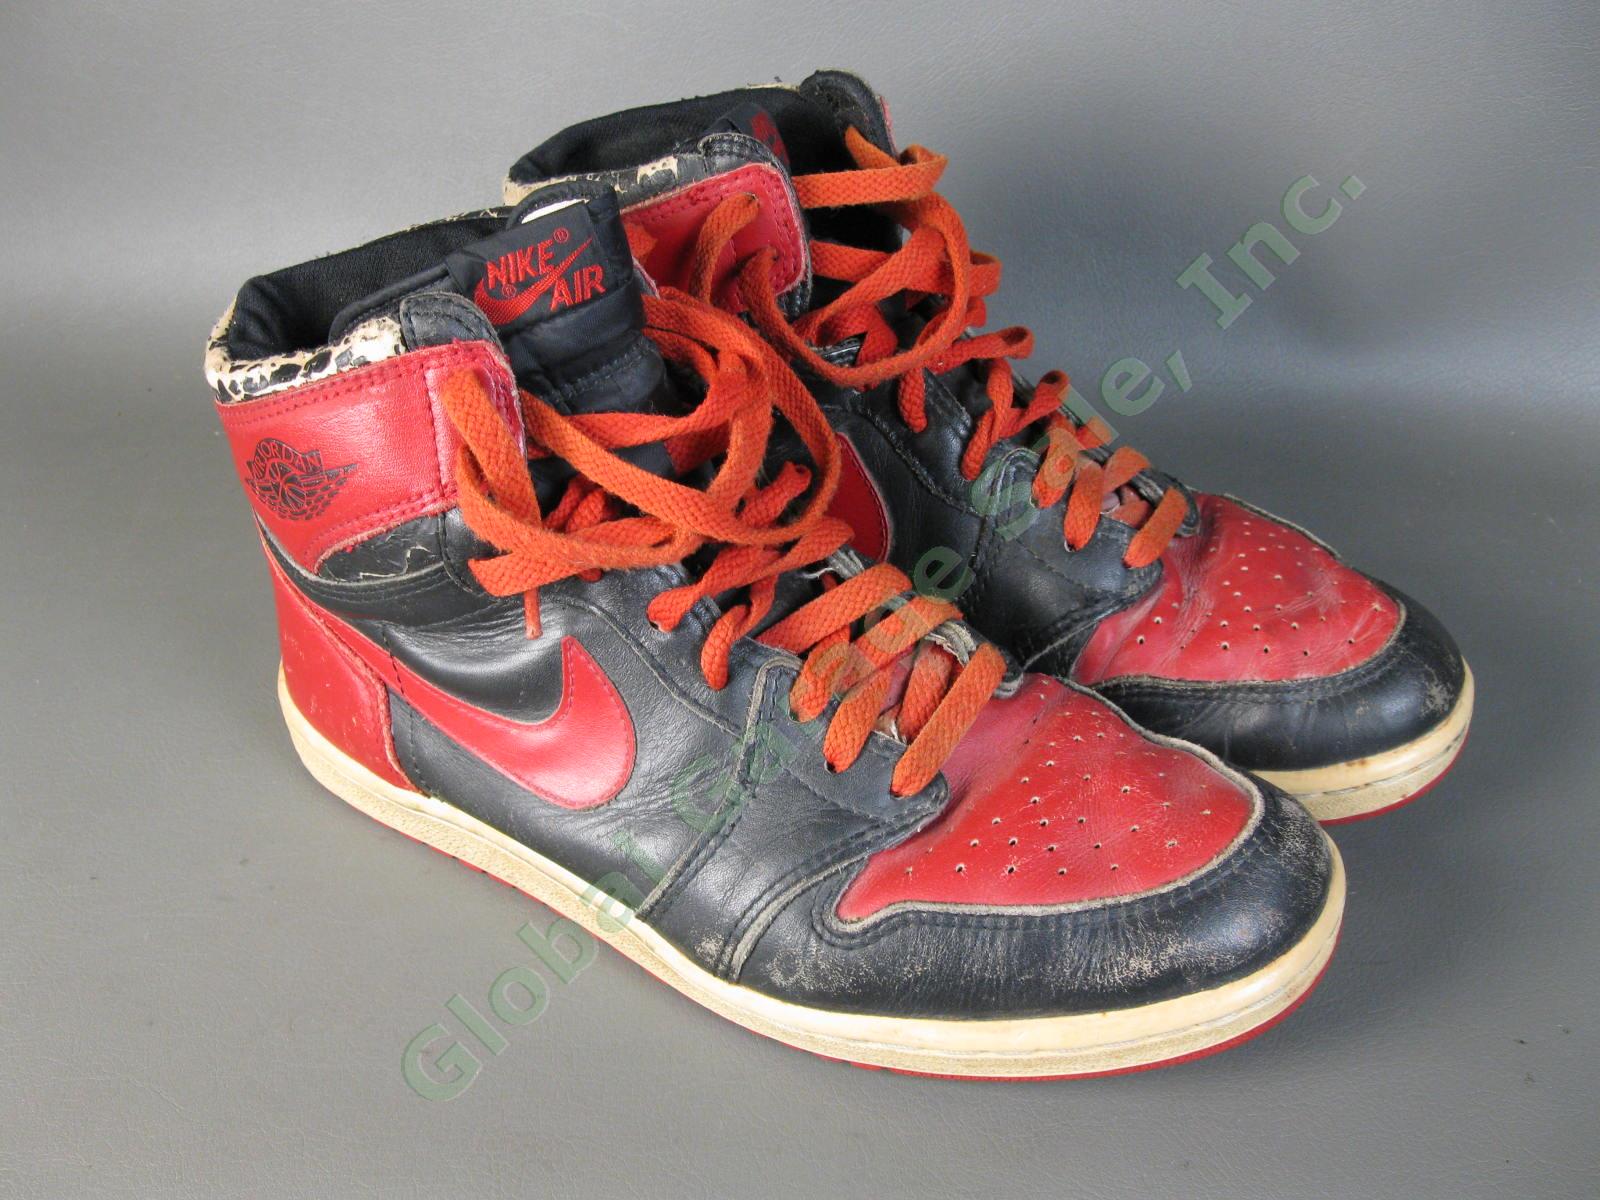 ORIGINAL 1985 Nike Air Jordan 1 Bred Black Red Chicago Bulls BANNED OG MJ AJI NR